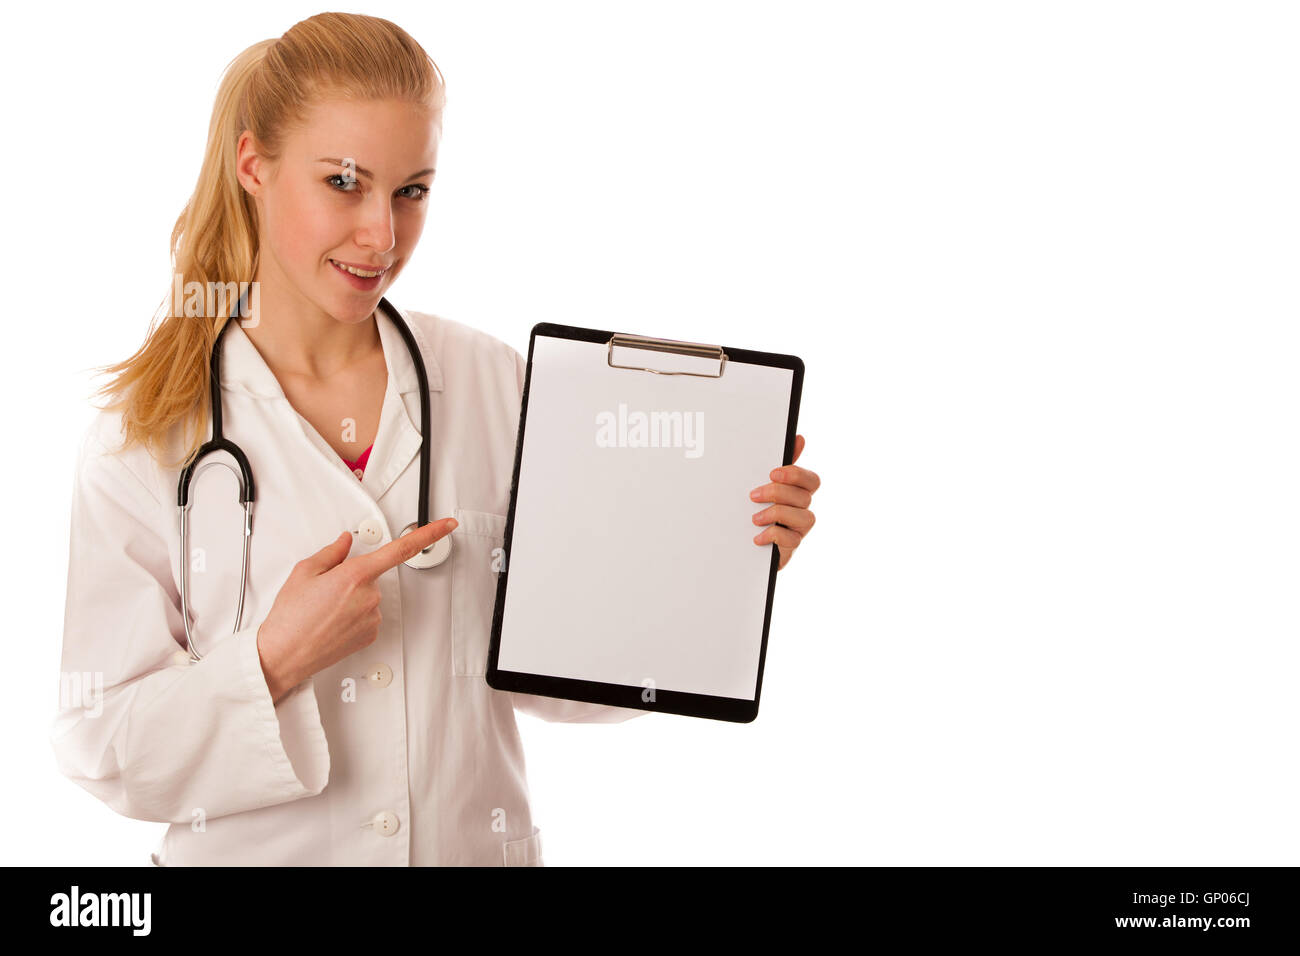 Femme médecin avec stéthoscope autour du cou montrant le presse-papiers avec espace pour noter ou faire de la publicité. Banque D'Images